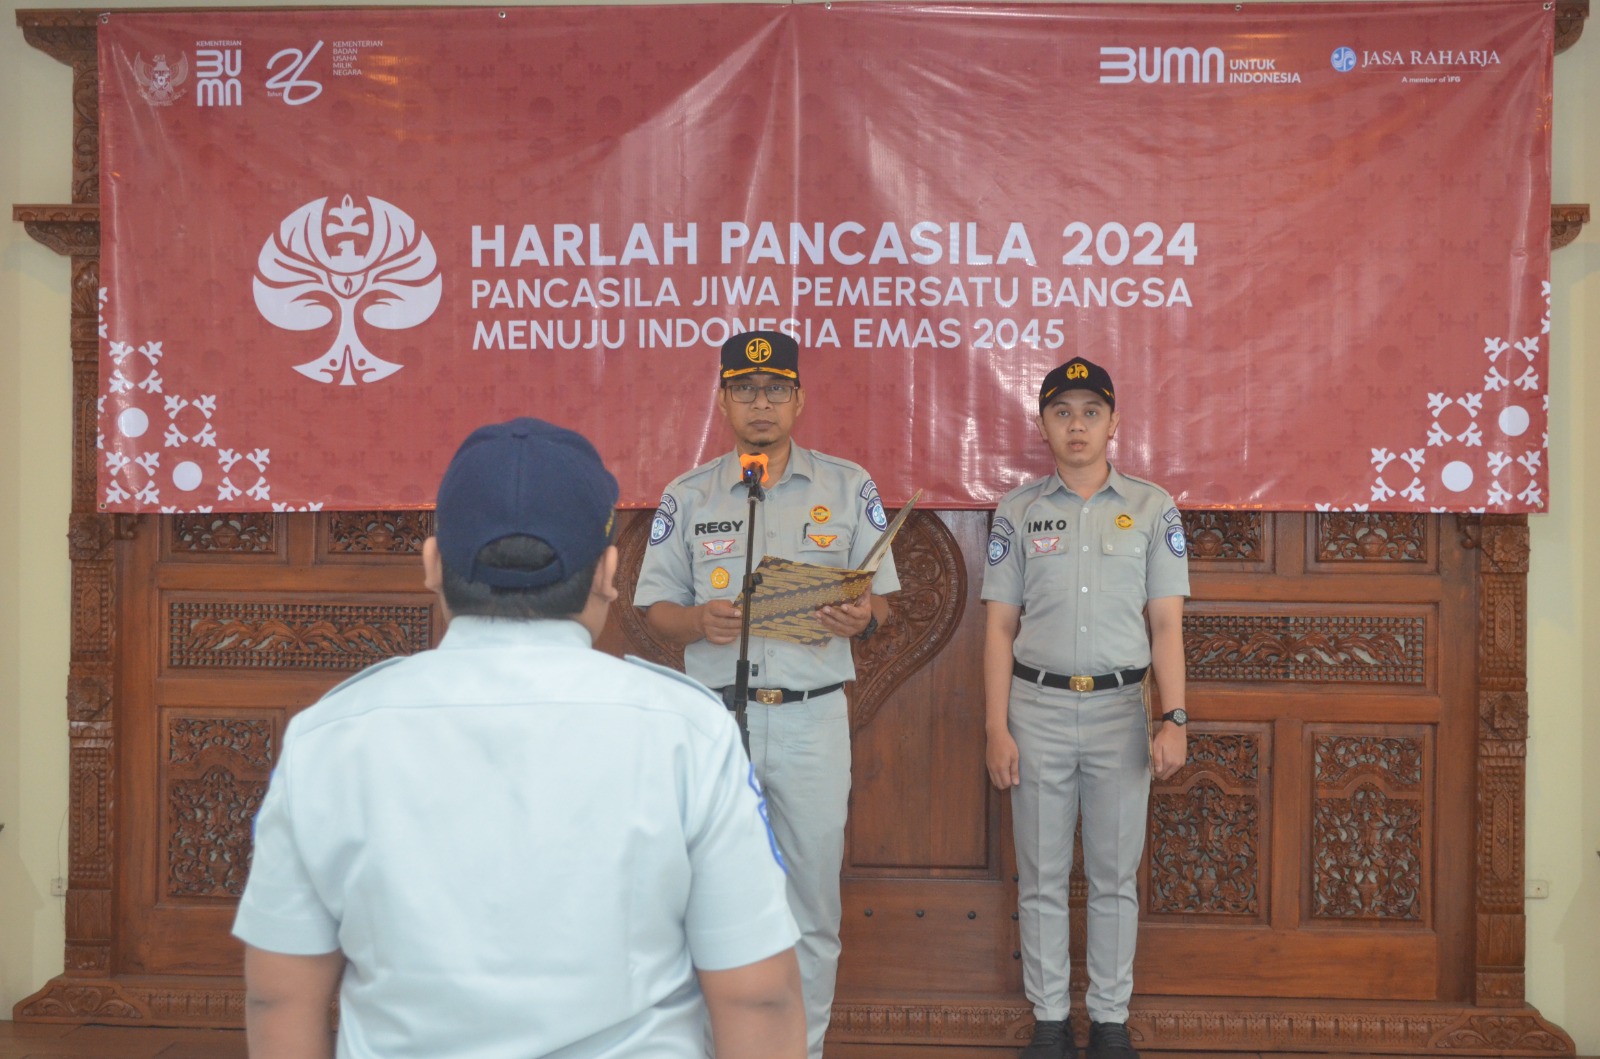 Jasa Raharja Adakan Upacara Peringatan Hari Lahir Pancasila 2024 di Halaman Kantor Jasa Raharja Yogyakarta